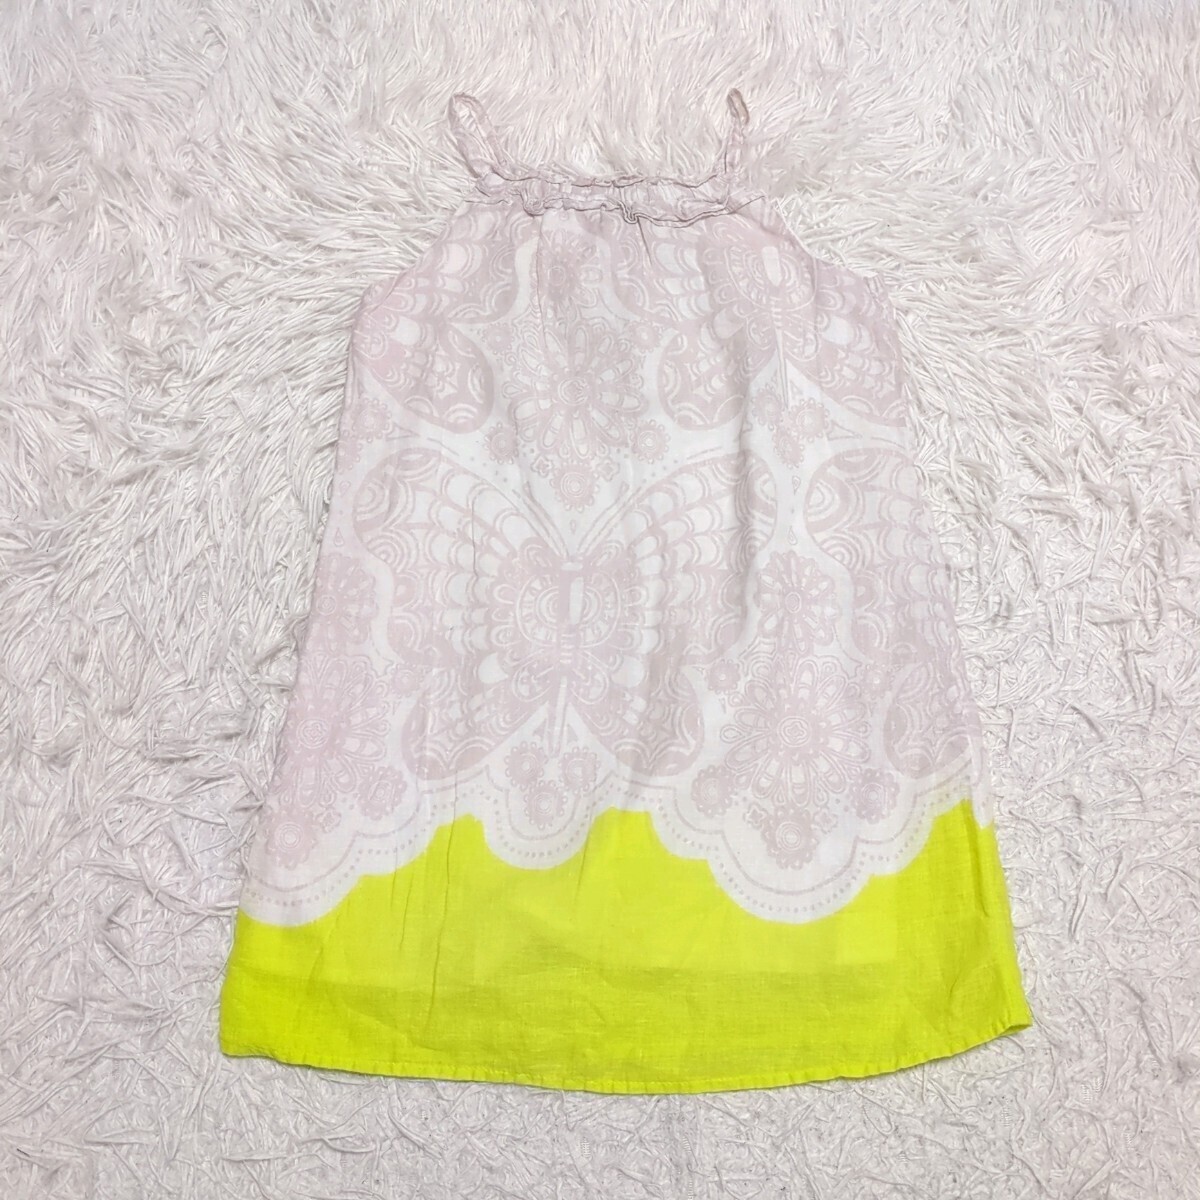 【送料無料】OLDNAVY オールドネイビー キャミソール ワンピース 5 110cmぐらい キッズ 子供服の画像1